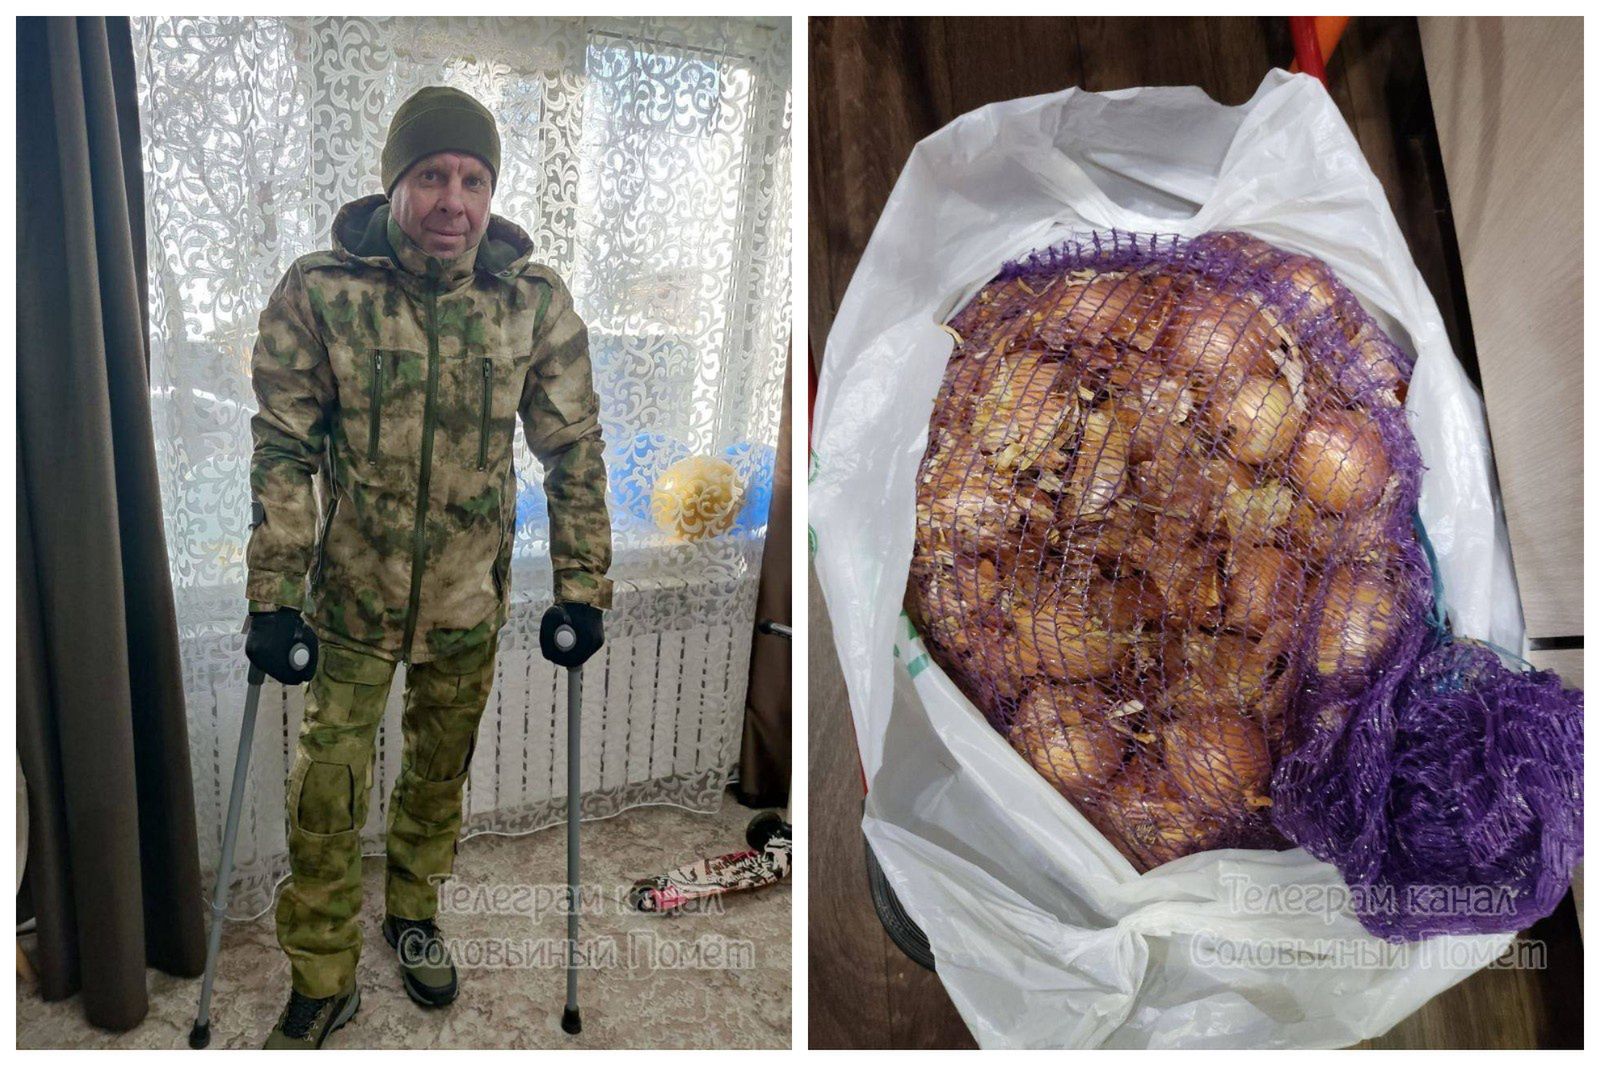 Odszkodowanie? Rosyjski weteran dostał dwa wiadra marchwi i wór cebuli